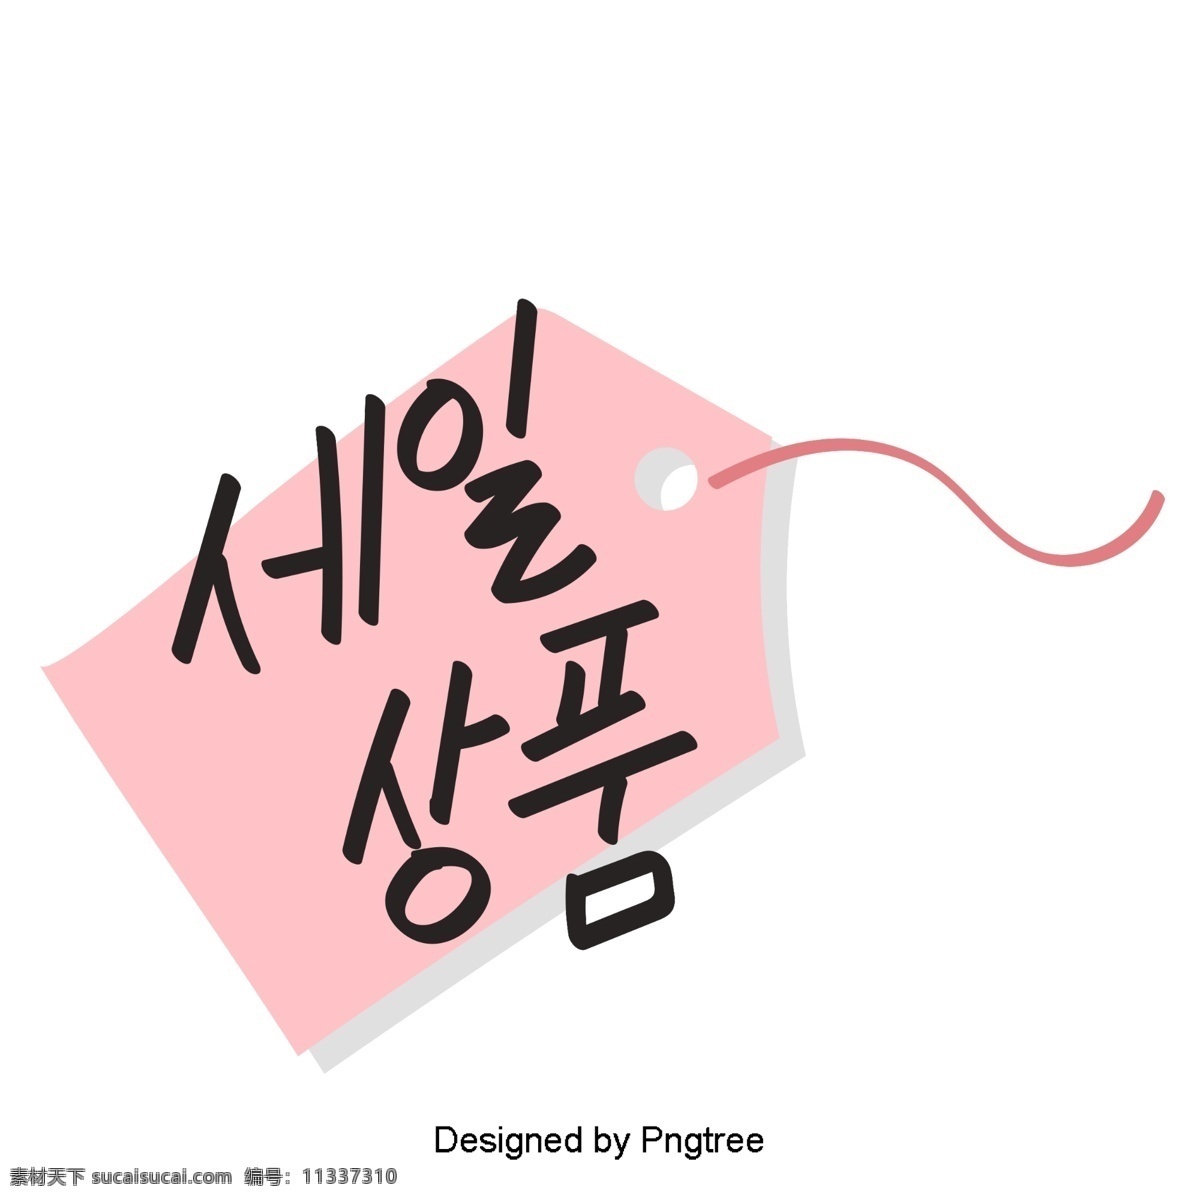 元素 产品 朝鲜 风格 字体 移动 留言板 可爱 卡通 粉红色 移动支付